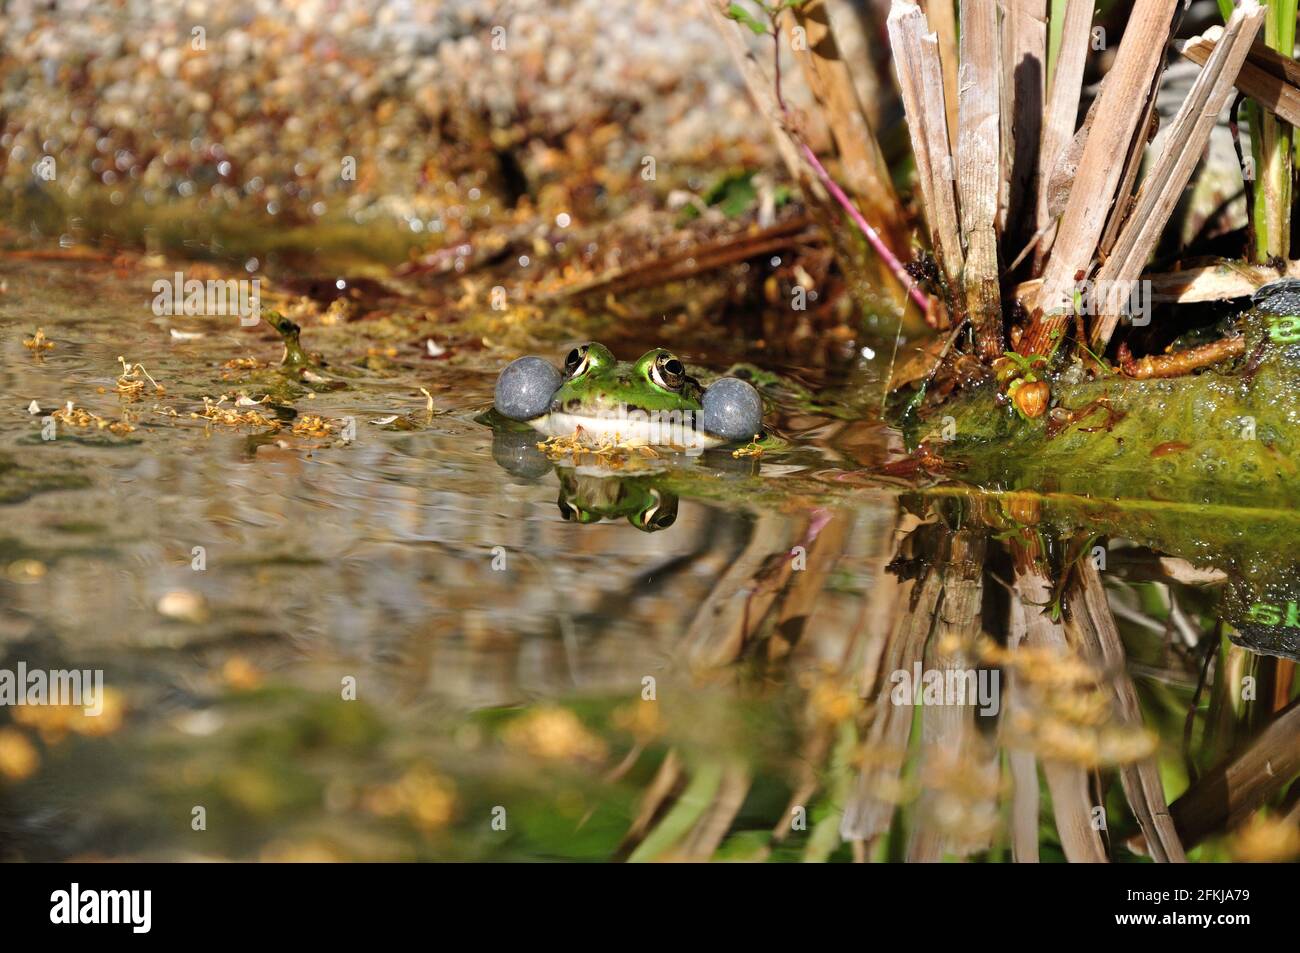 Ein Teichfrosch (Pelophylax) lässt es sich im Gartenteich gut gehen und verkündet von Zeit zu Zeit lautstark seine Anwesenheit. - A green frog (Peloph Stock Photo